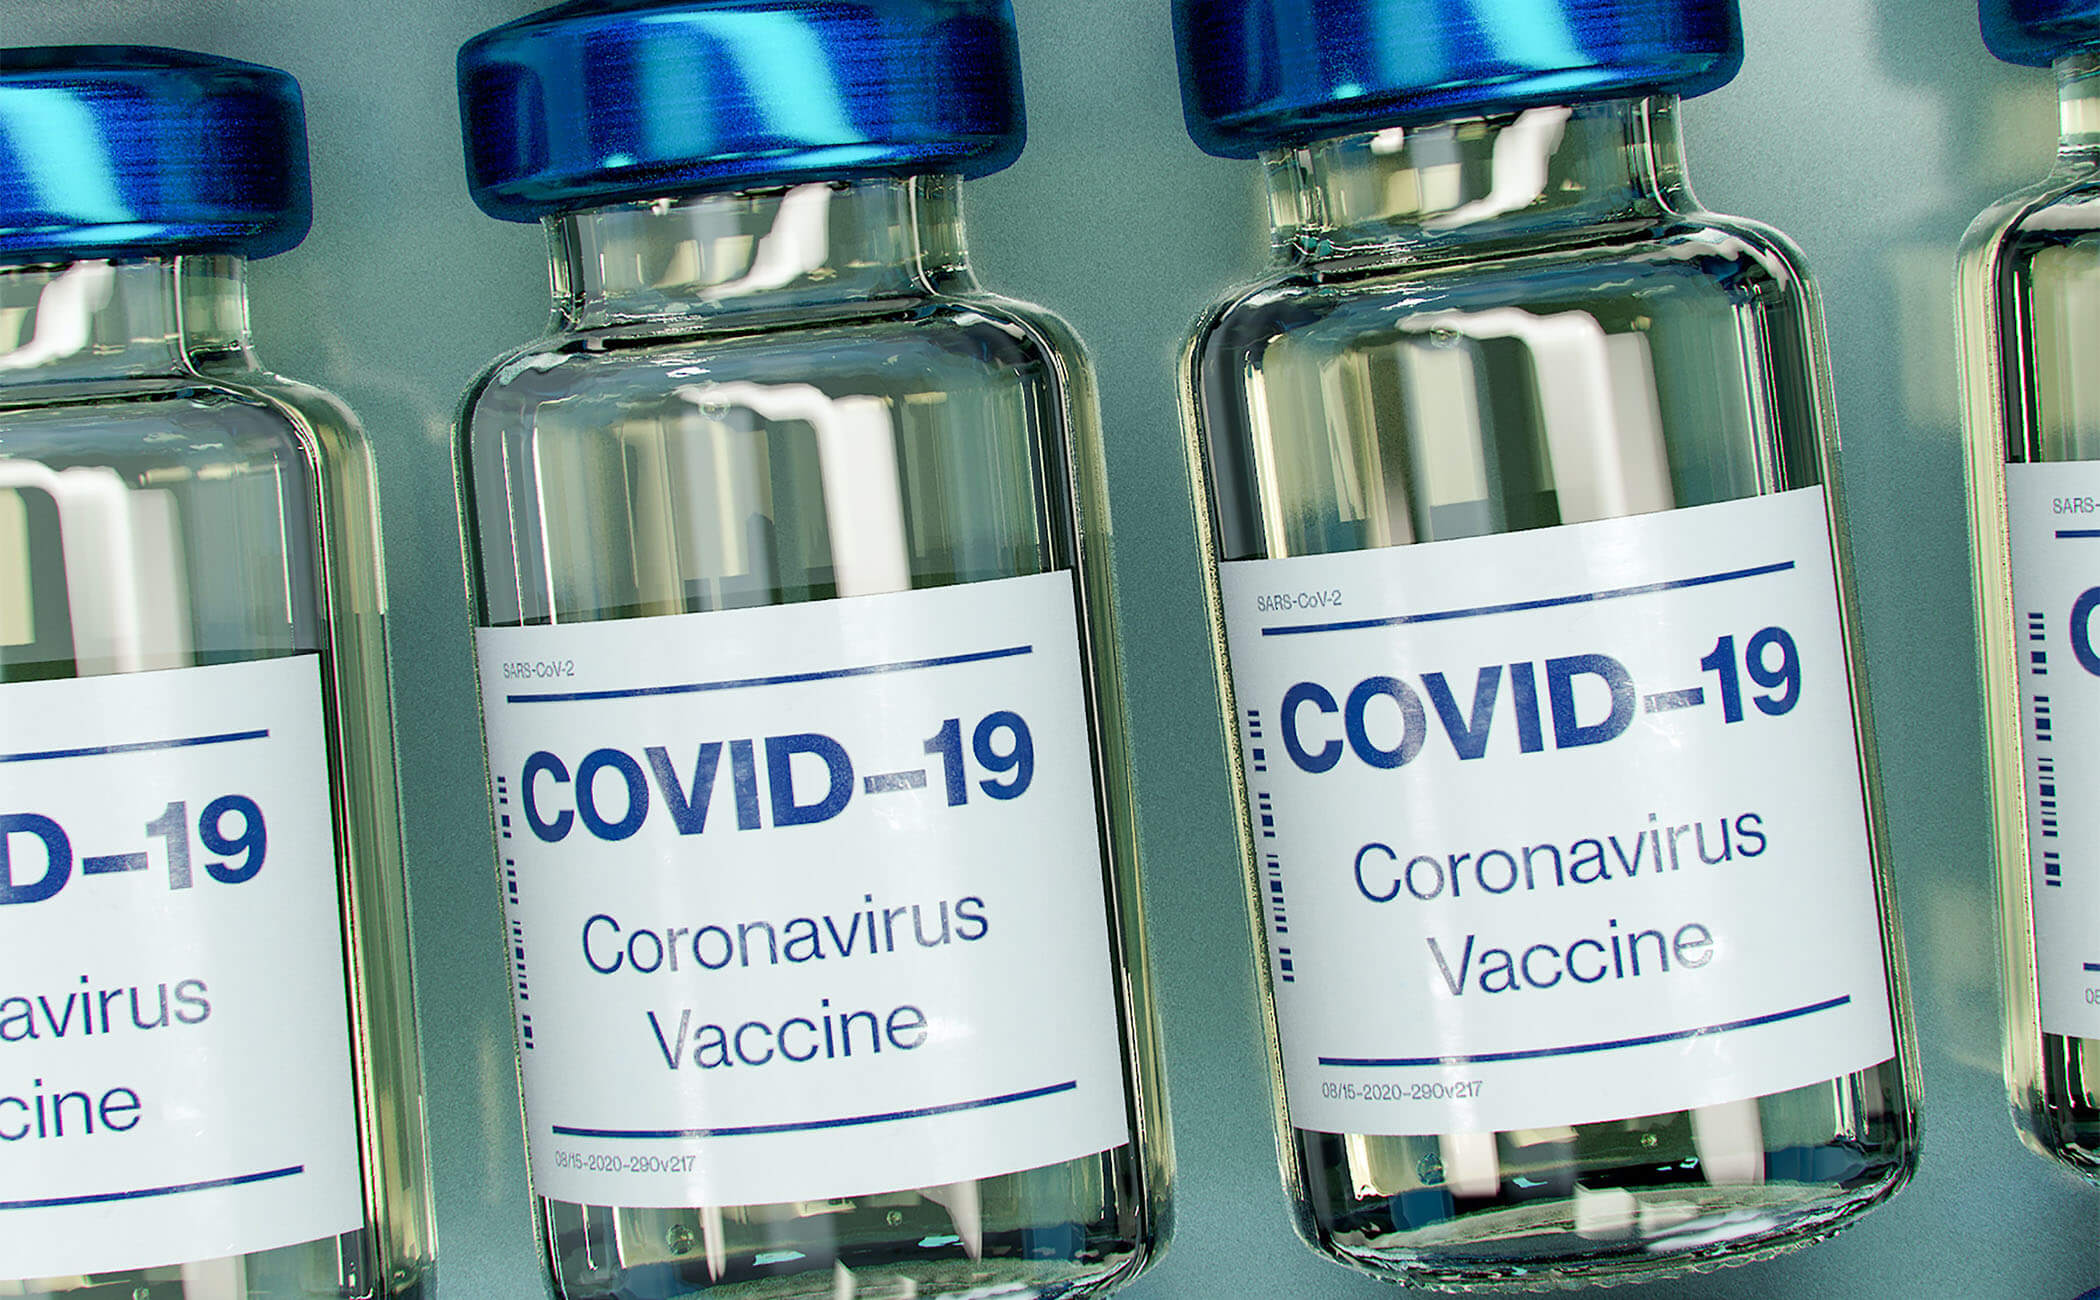 COVID-19 Vaccine Adoption in North Carolina